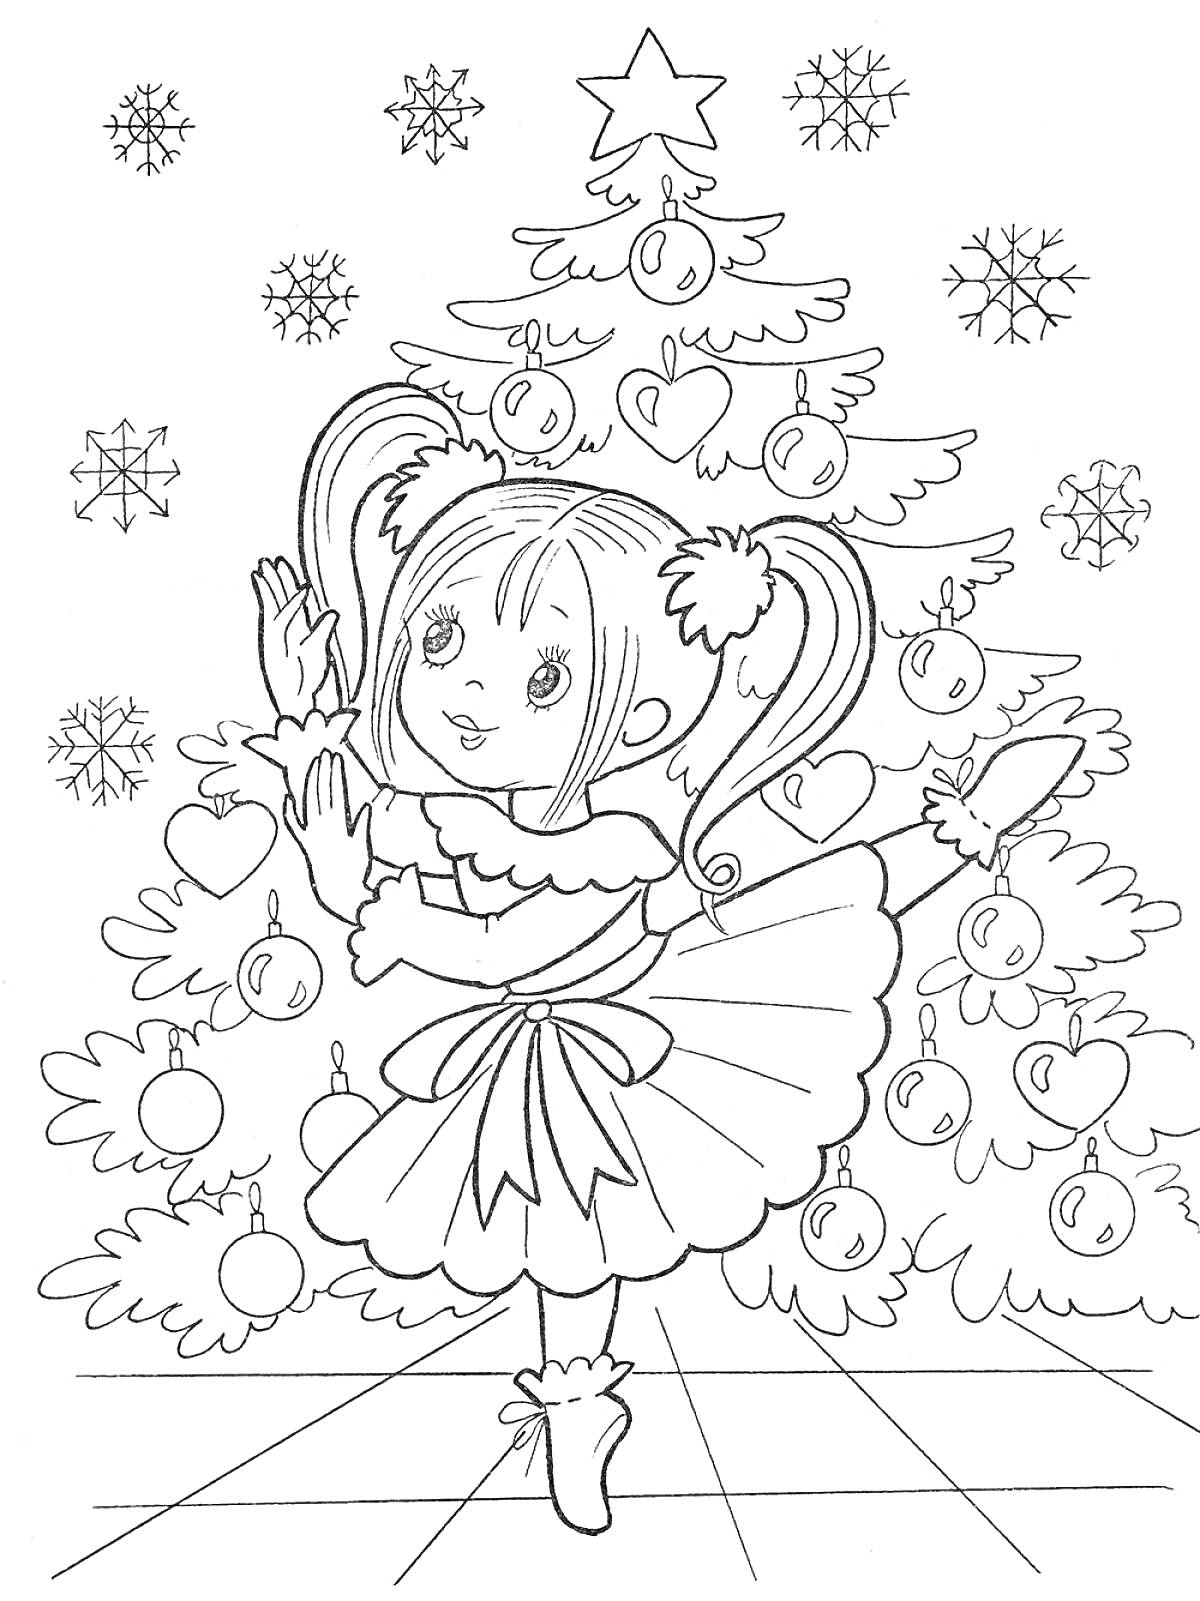 Девочка в платье на фоне новогодней елки с украшениями и снежинками